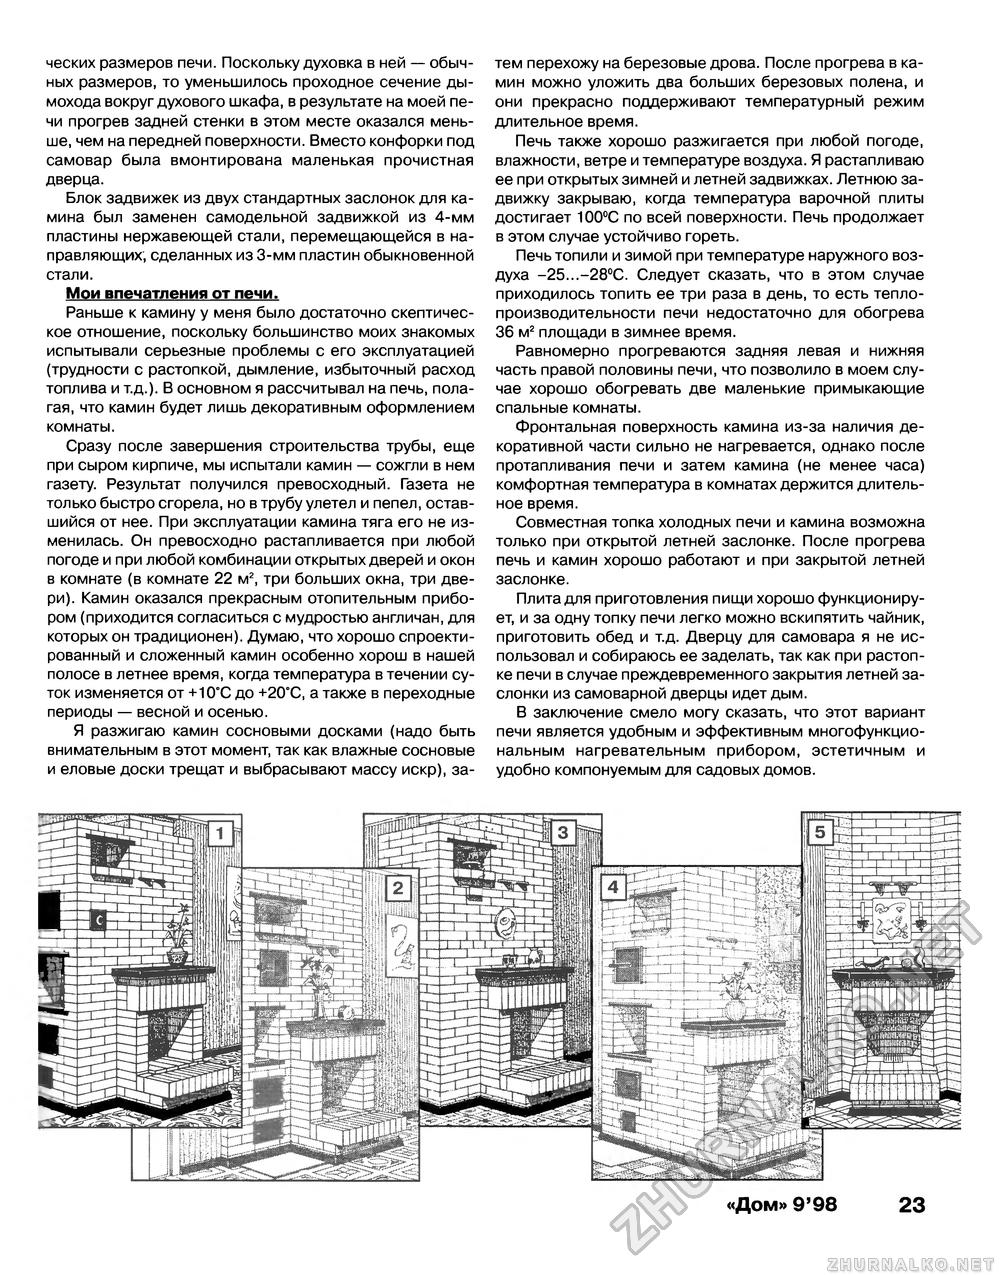 Дом 1998-09, страница 23